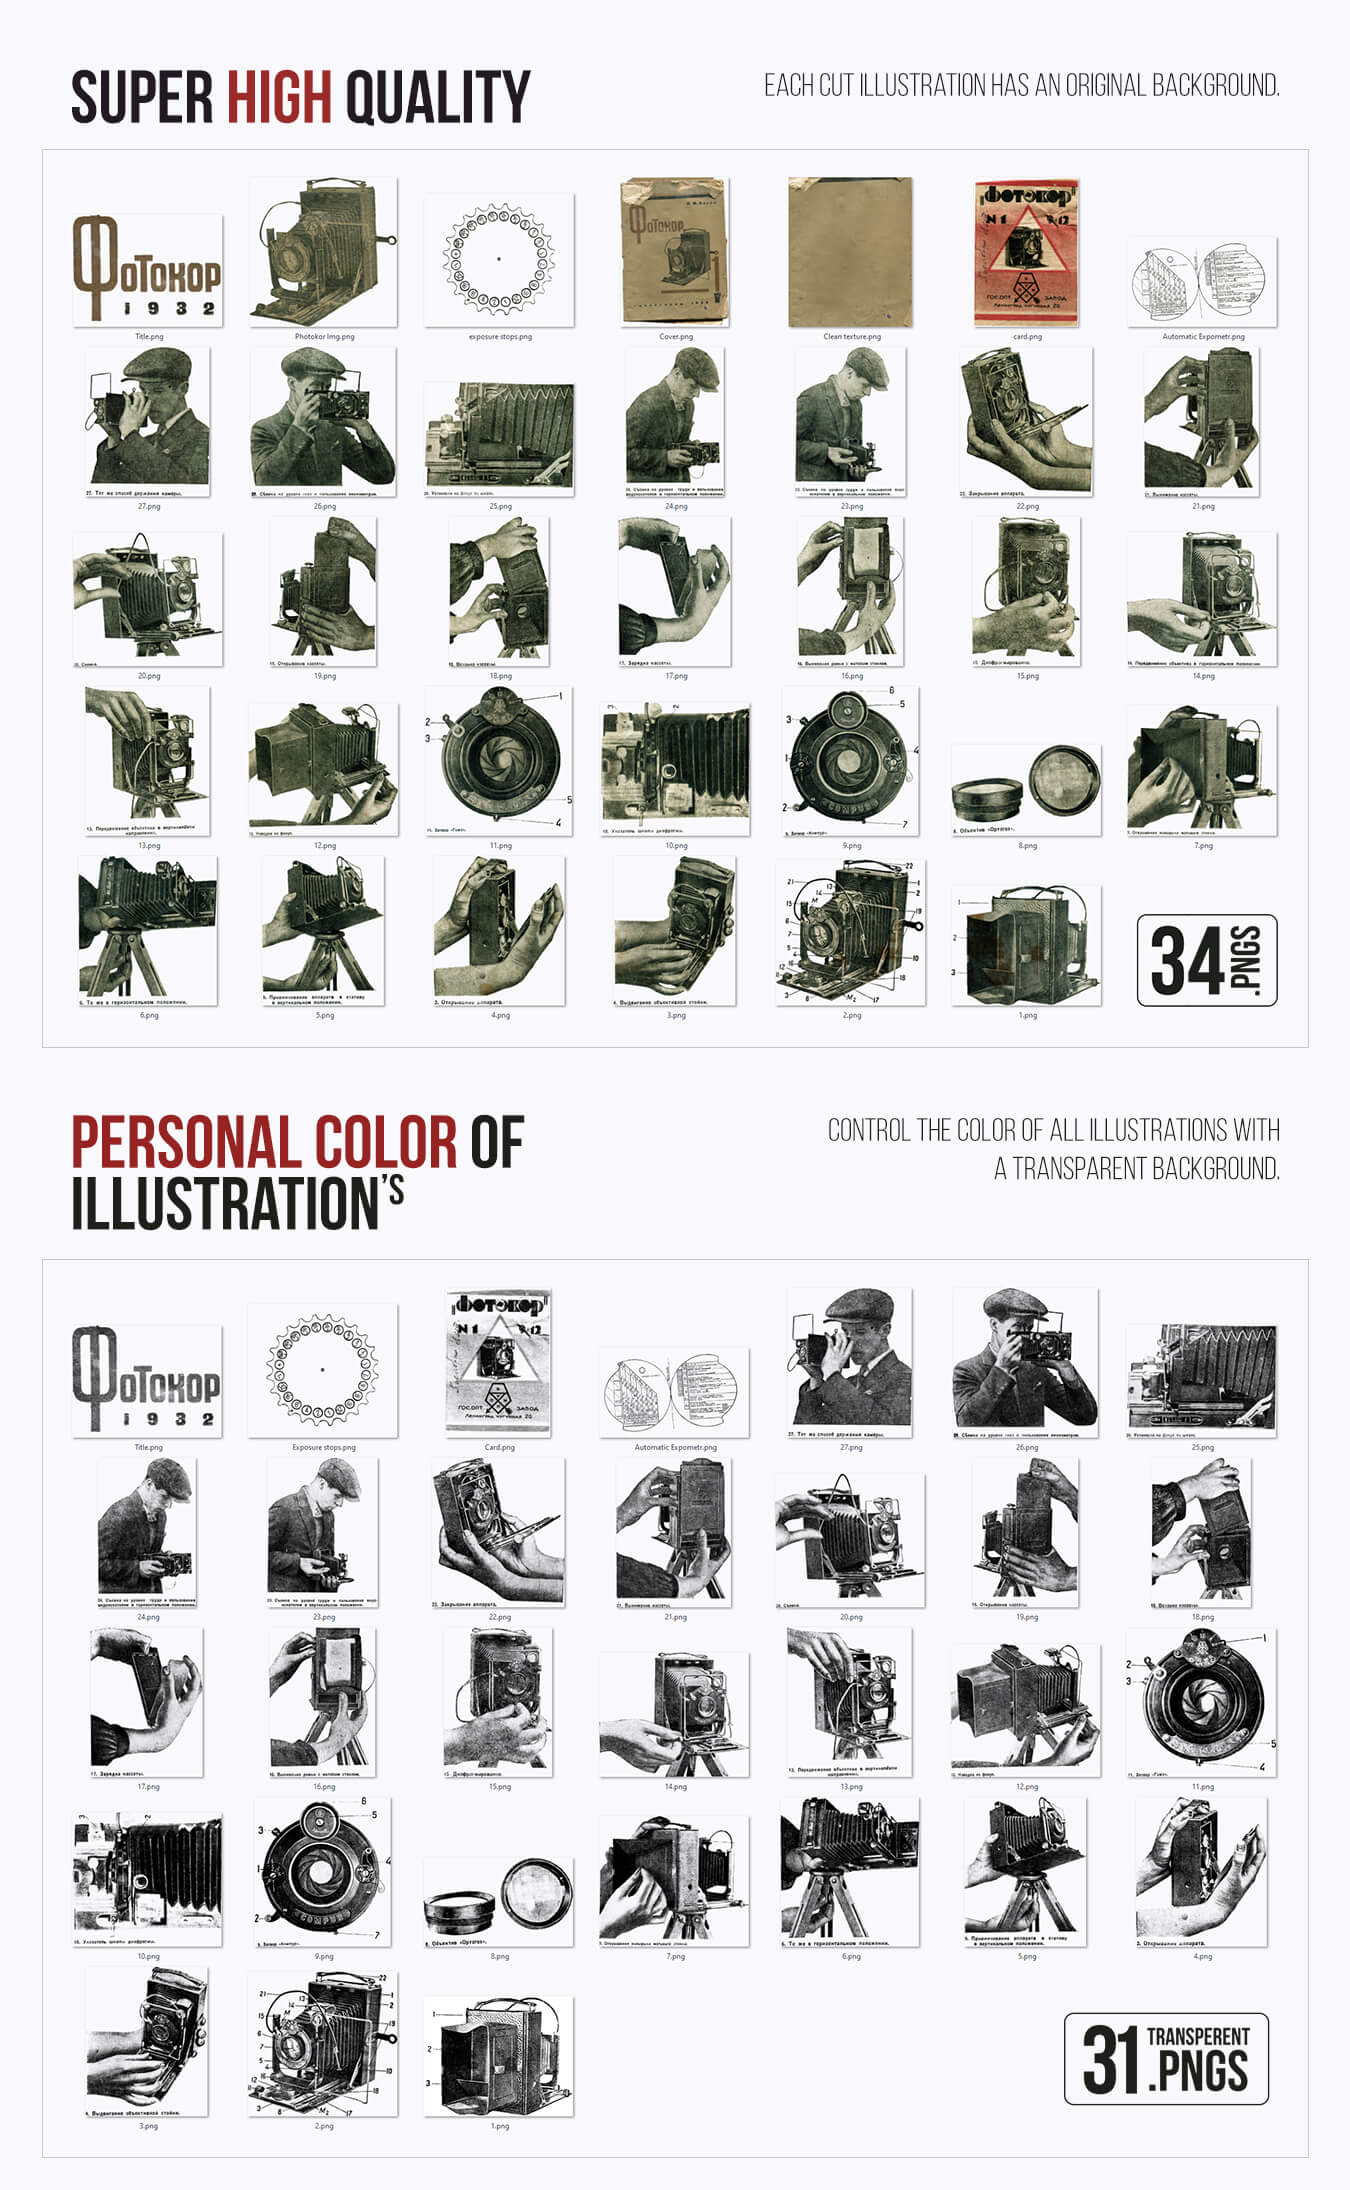 30 多幅 1932 年的复古扫描插图 — 1200 DPI插图6